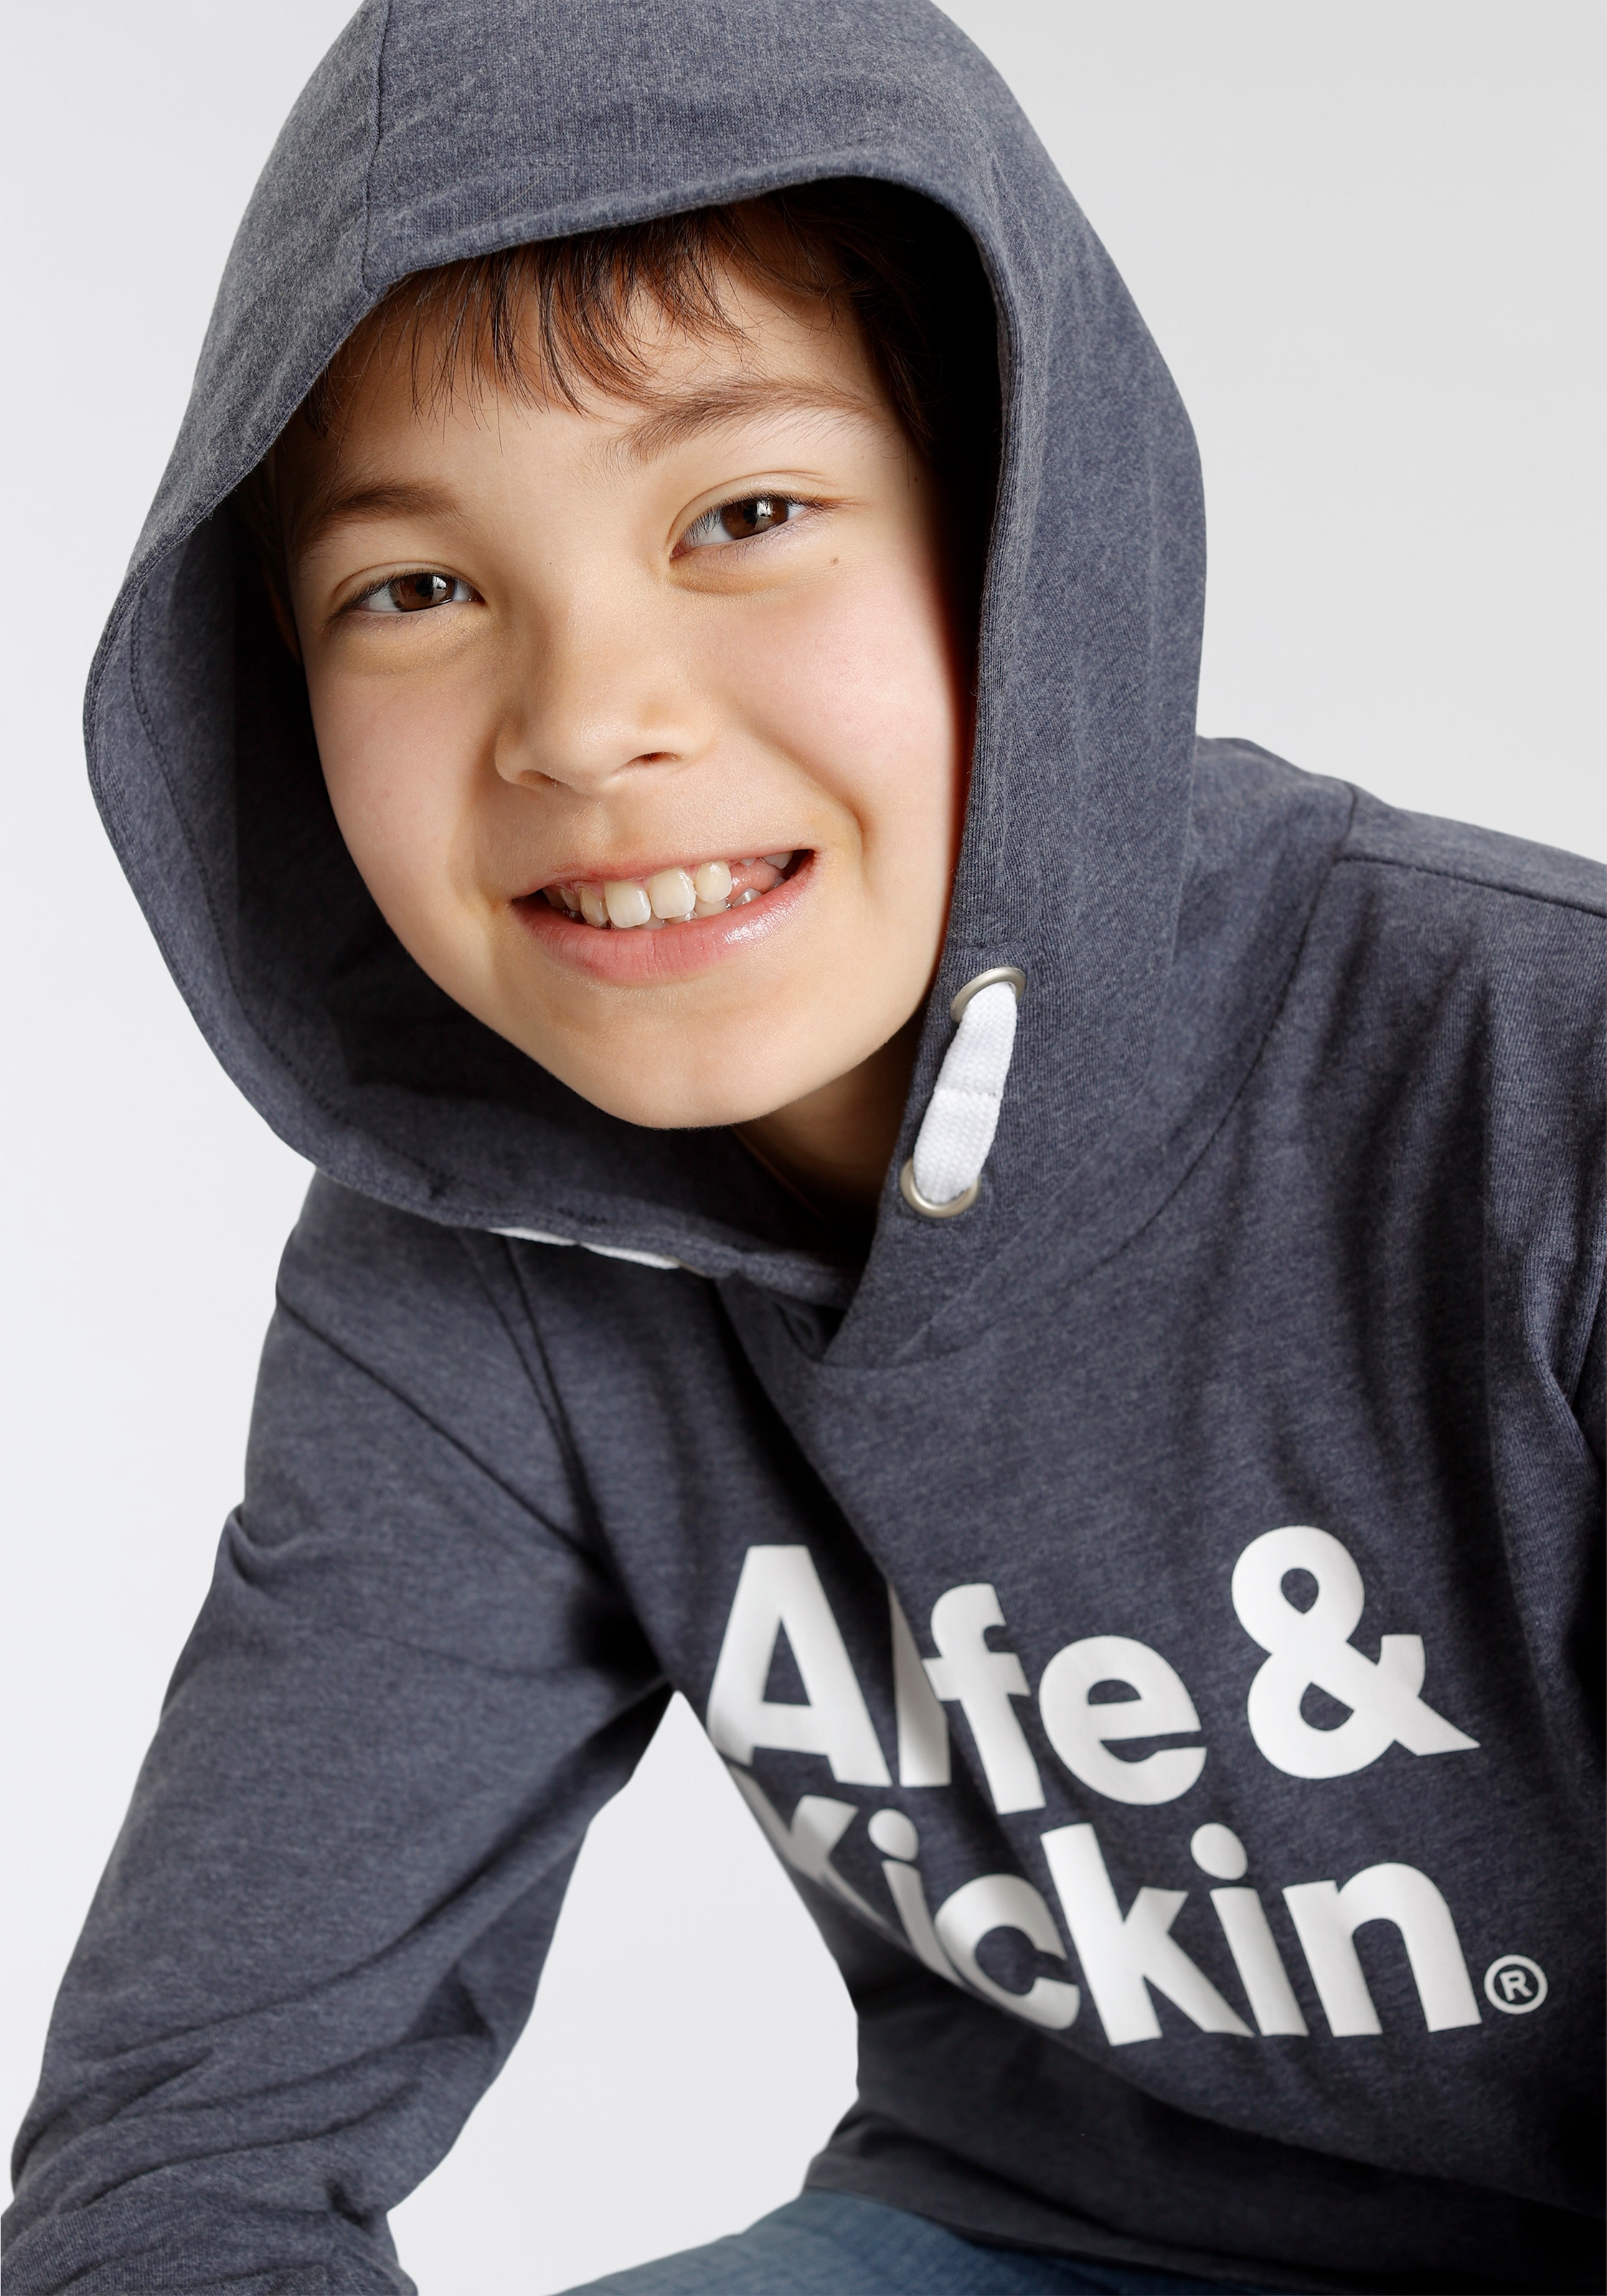 »Logo-Print«, Kickin Qualität Kapuzenshirt melierter bei Alife & kaufen in OTTO